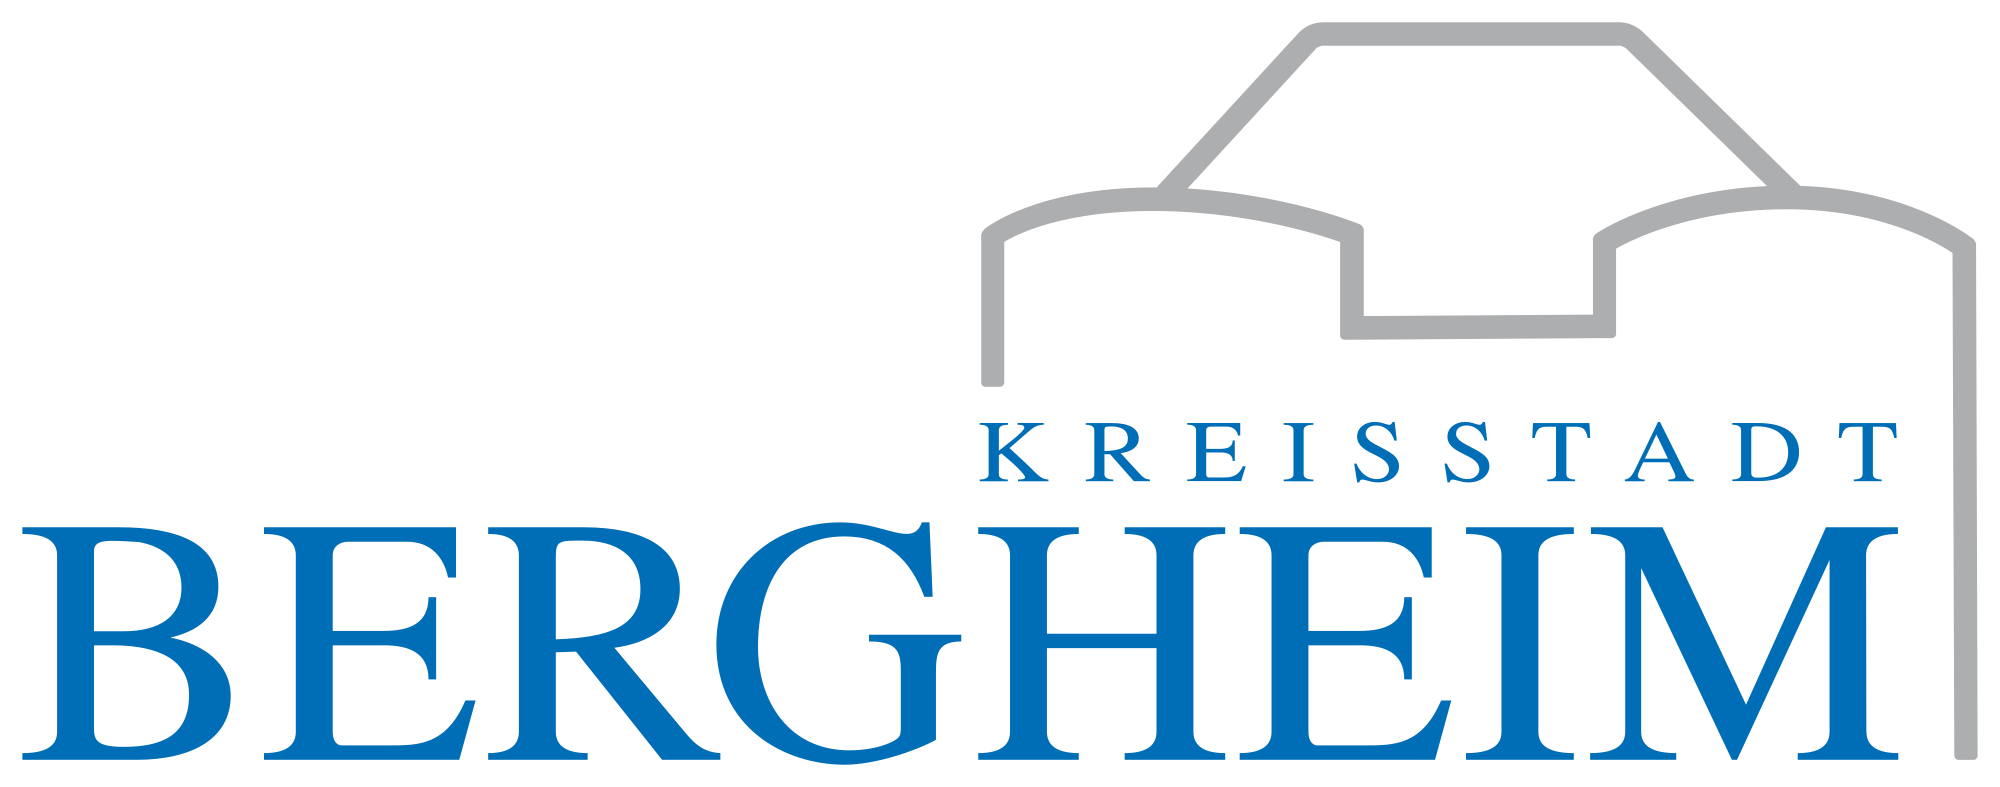 kreisstadt bergheim logo transparentb002503640